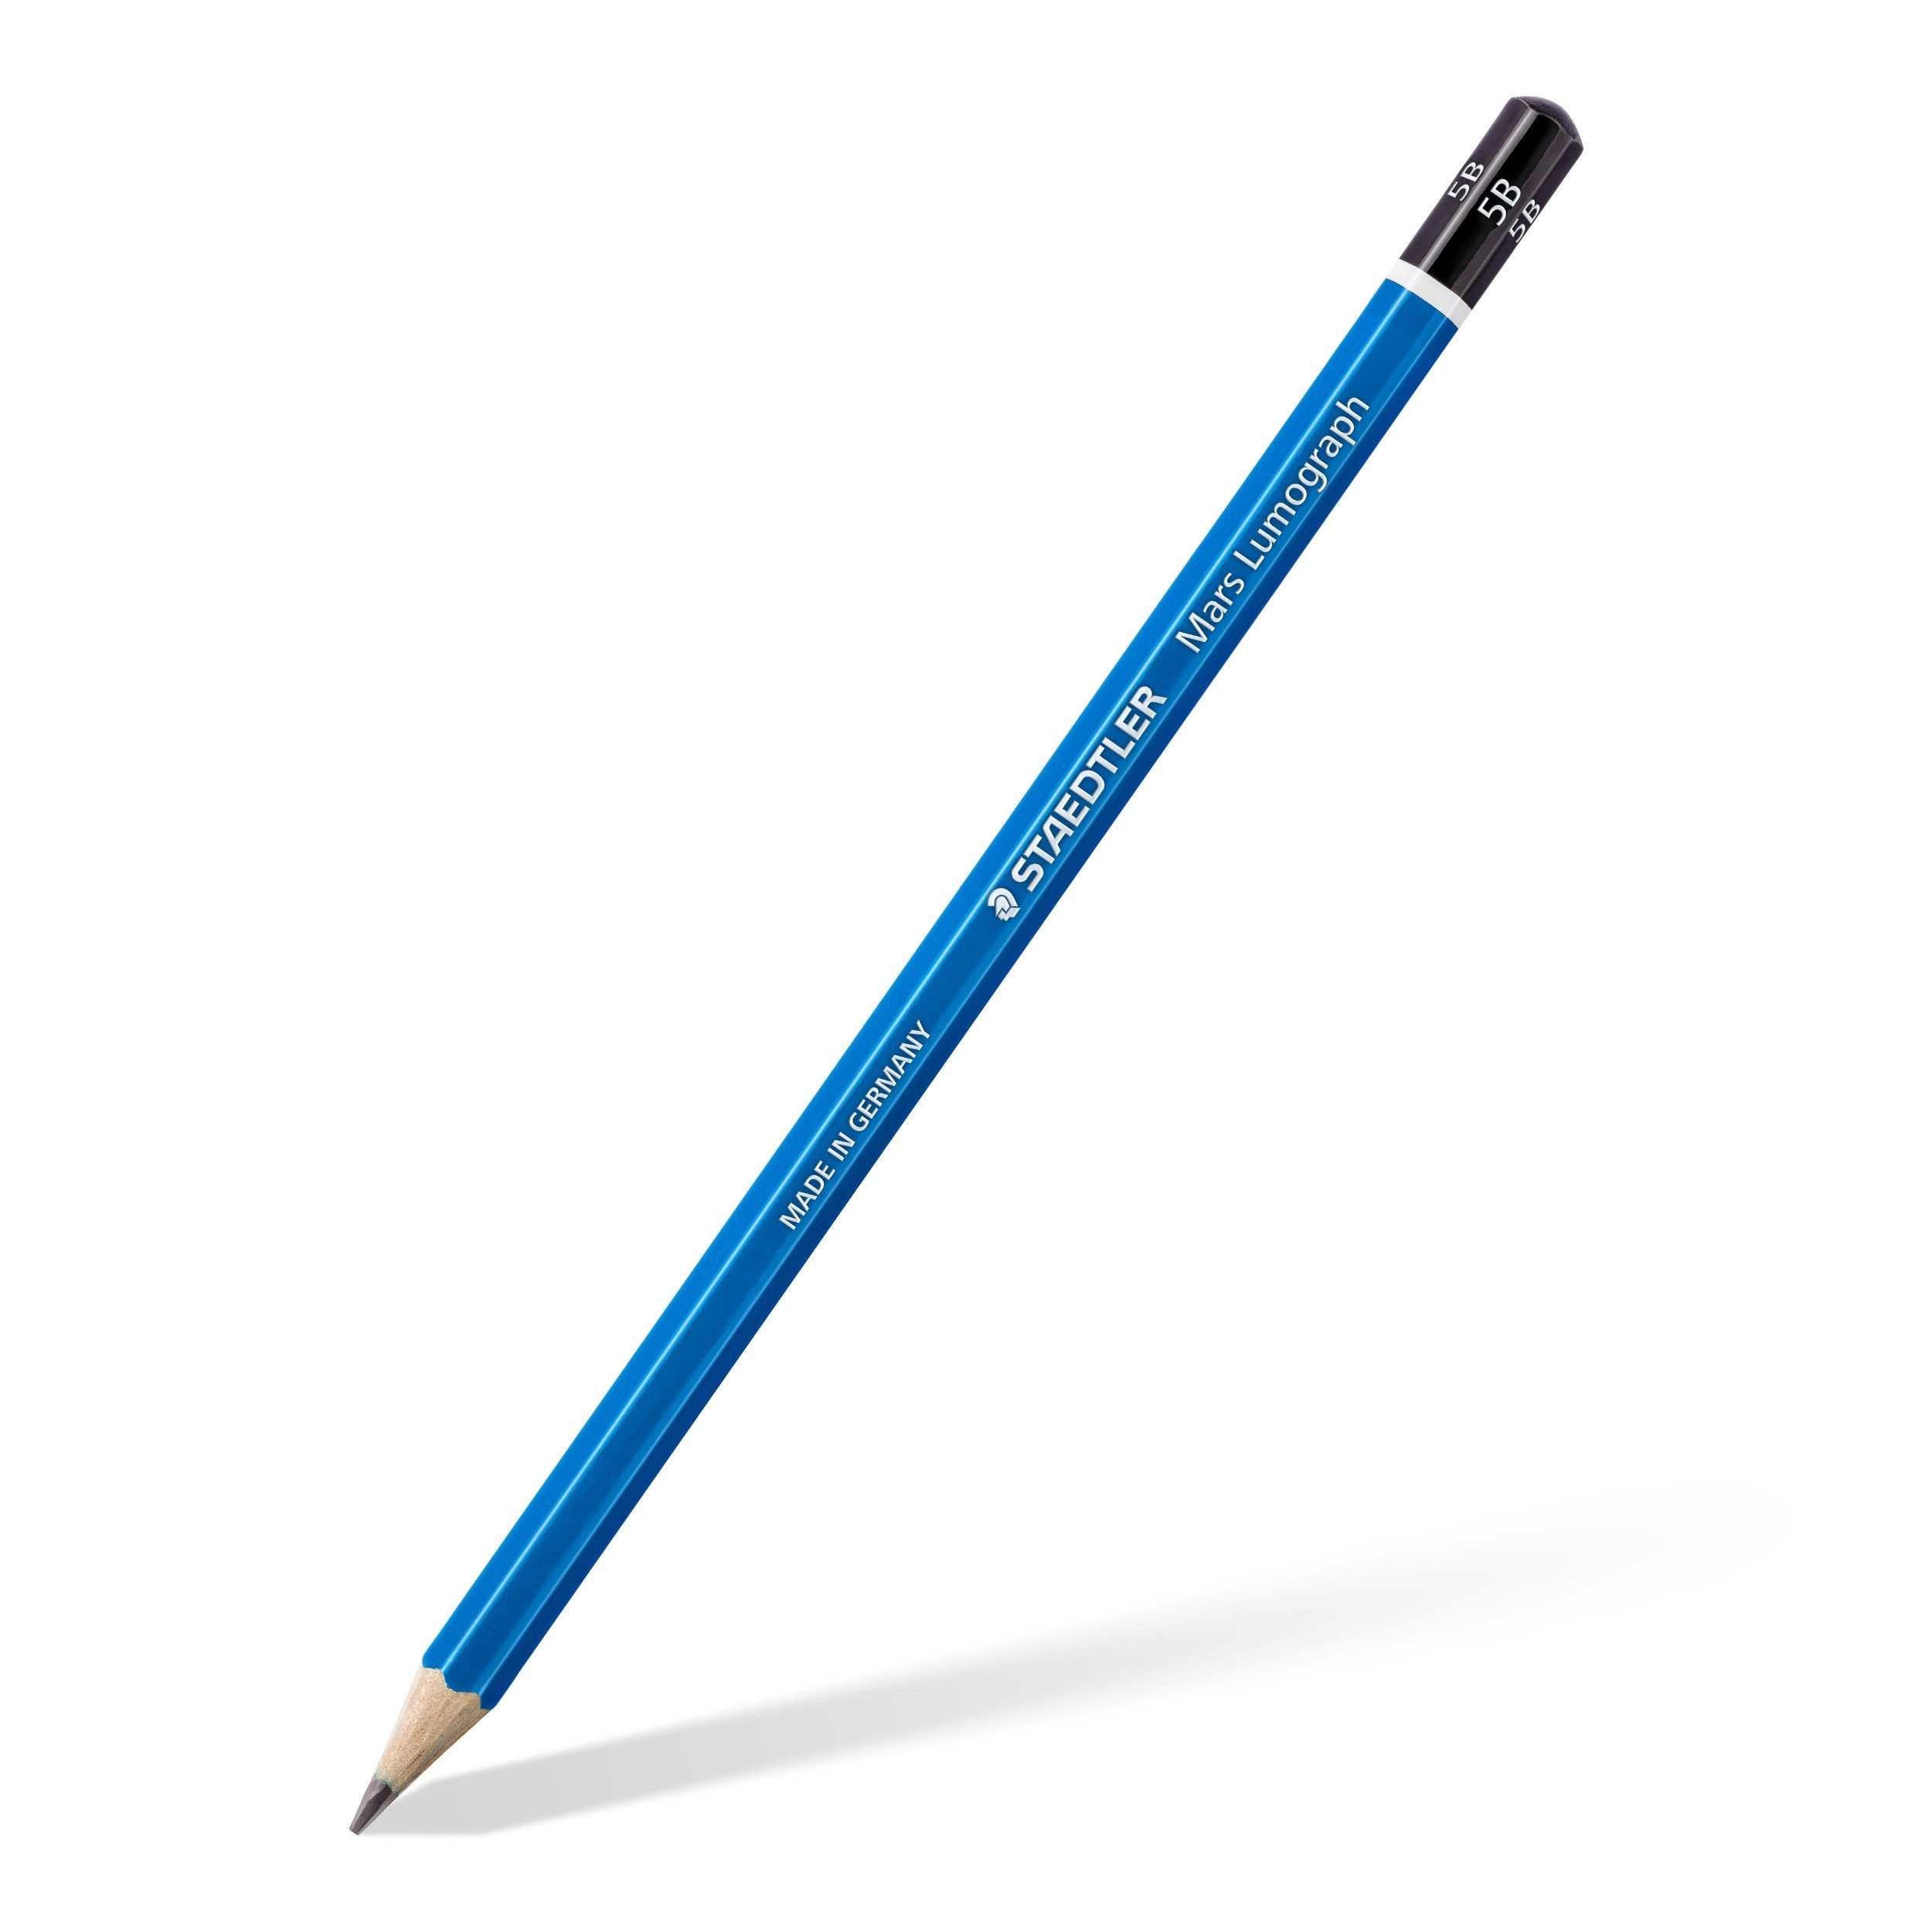 175mm leicht Härte Lumograph® bruchfest Bleistift Mars® 100-5B, 5B STAEDTLER spitzbar, bruchfest